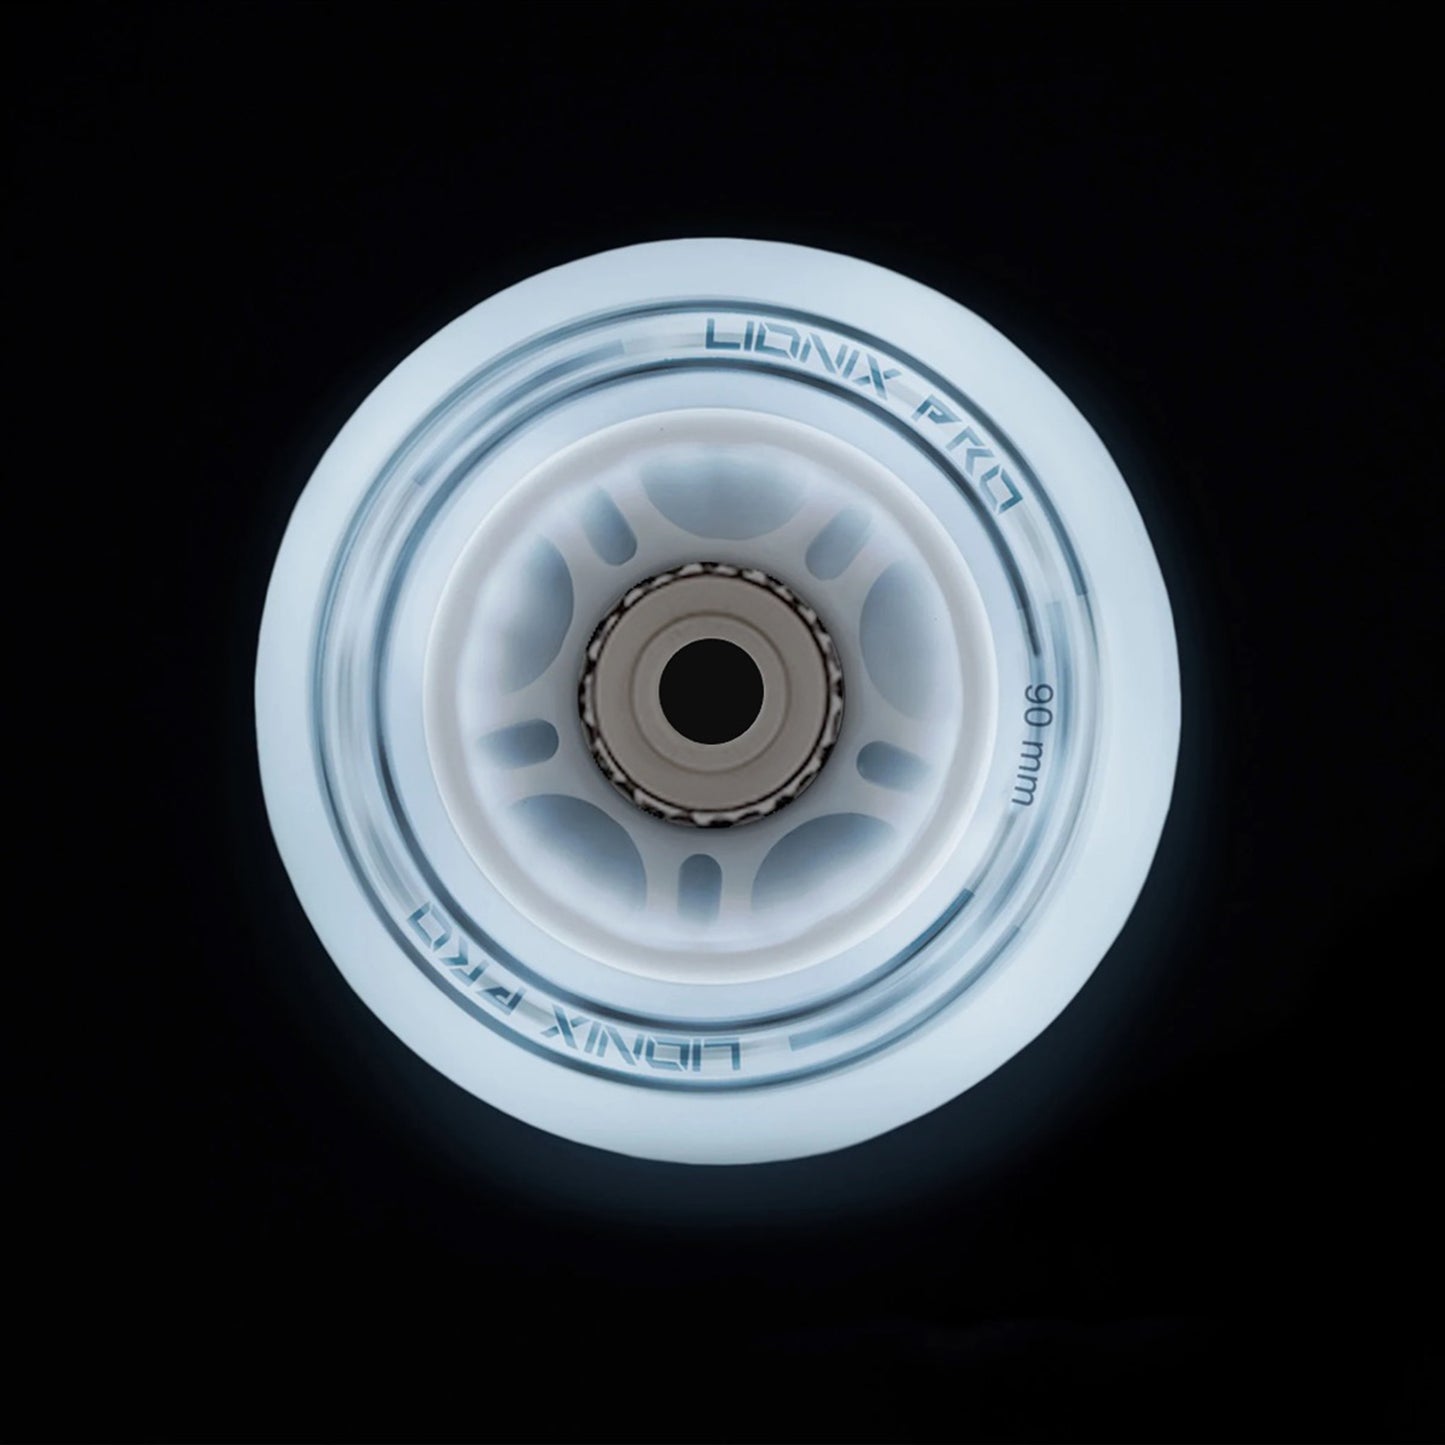 Set de 4 ruedas Nebular con luz LED - 90mm